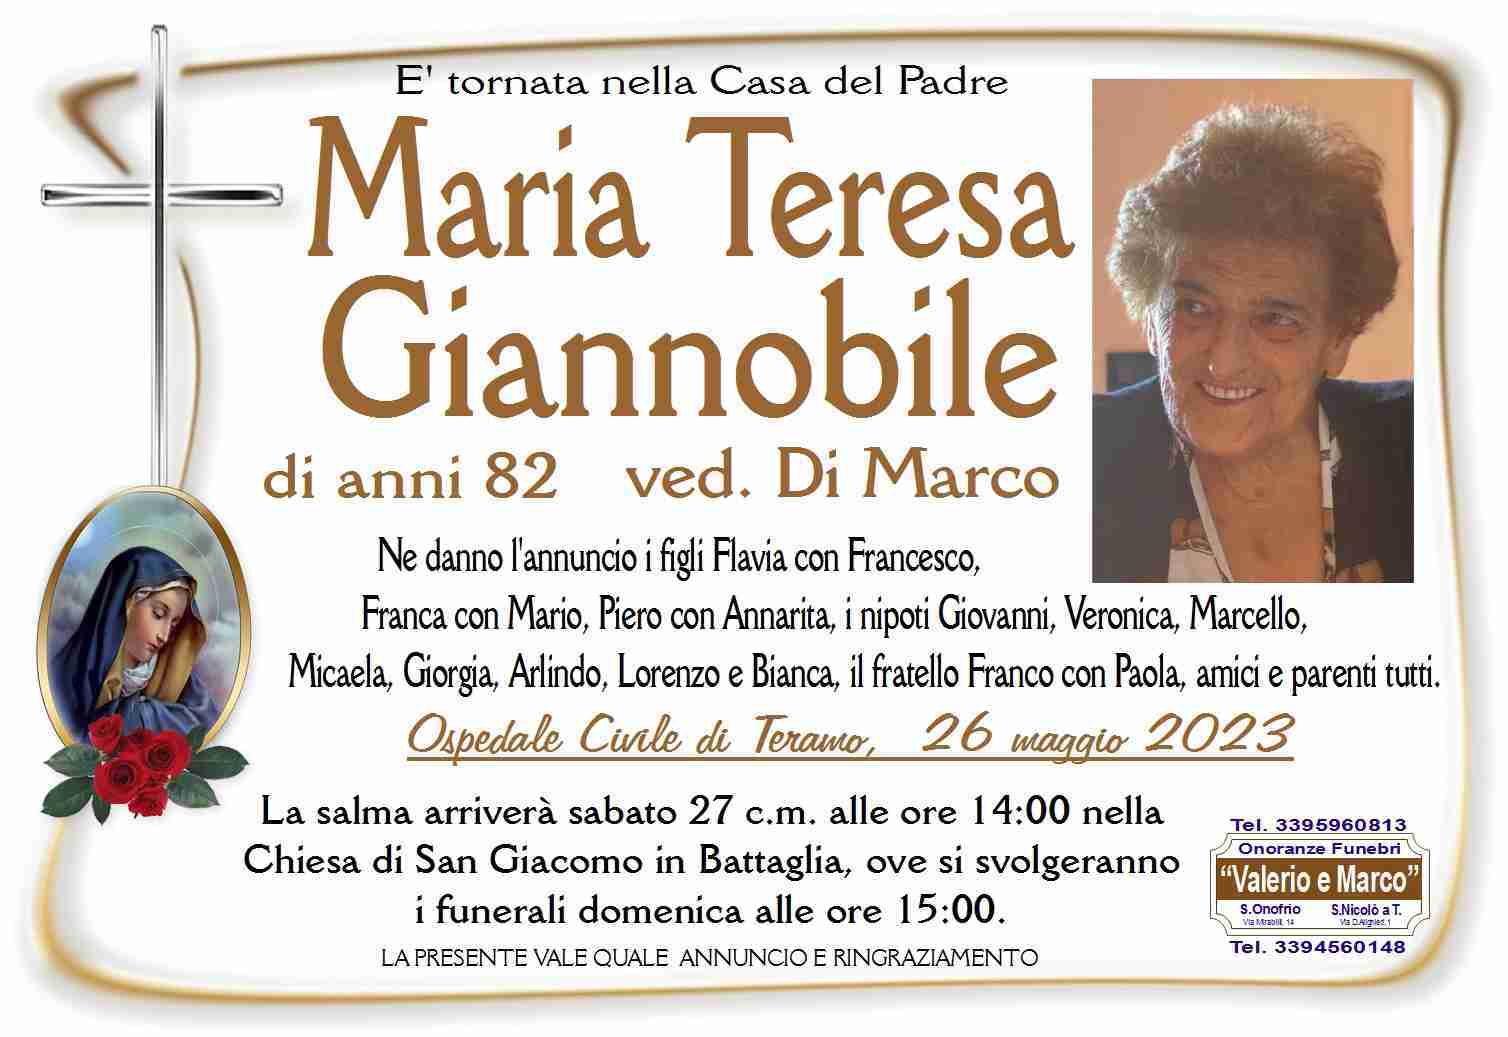 Maria Teresa Giannobile